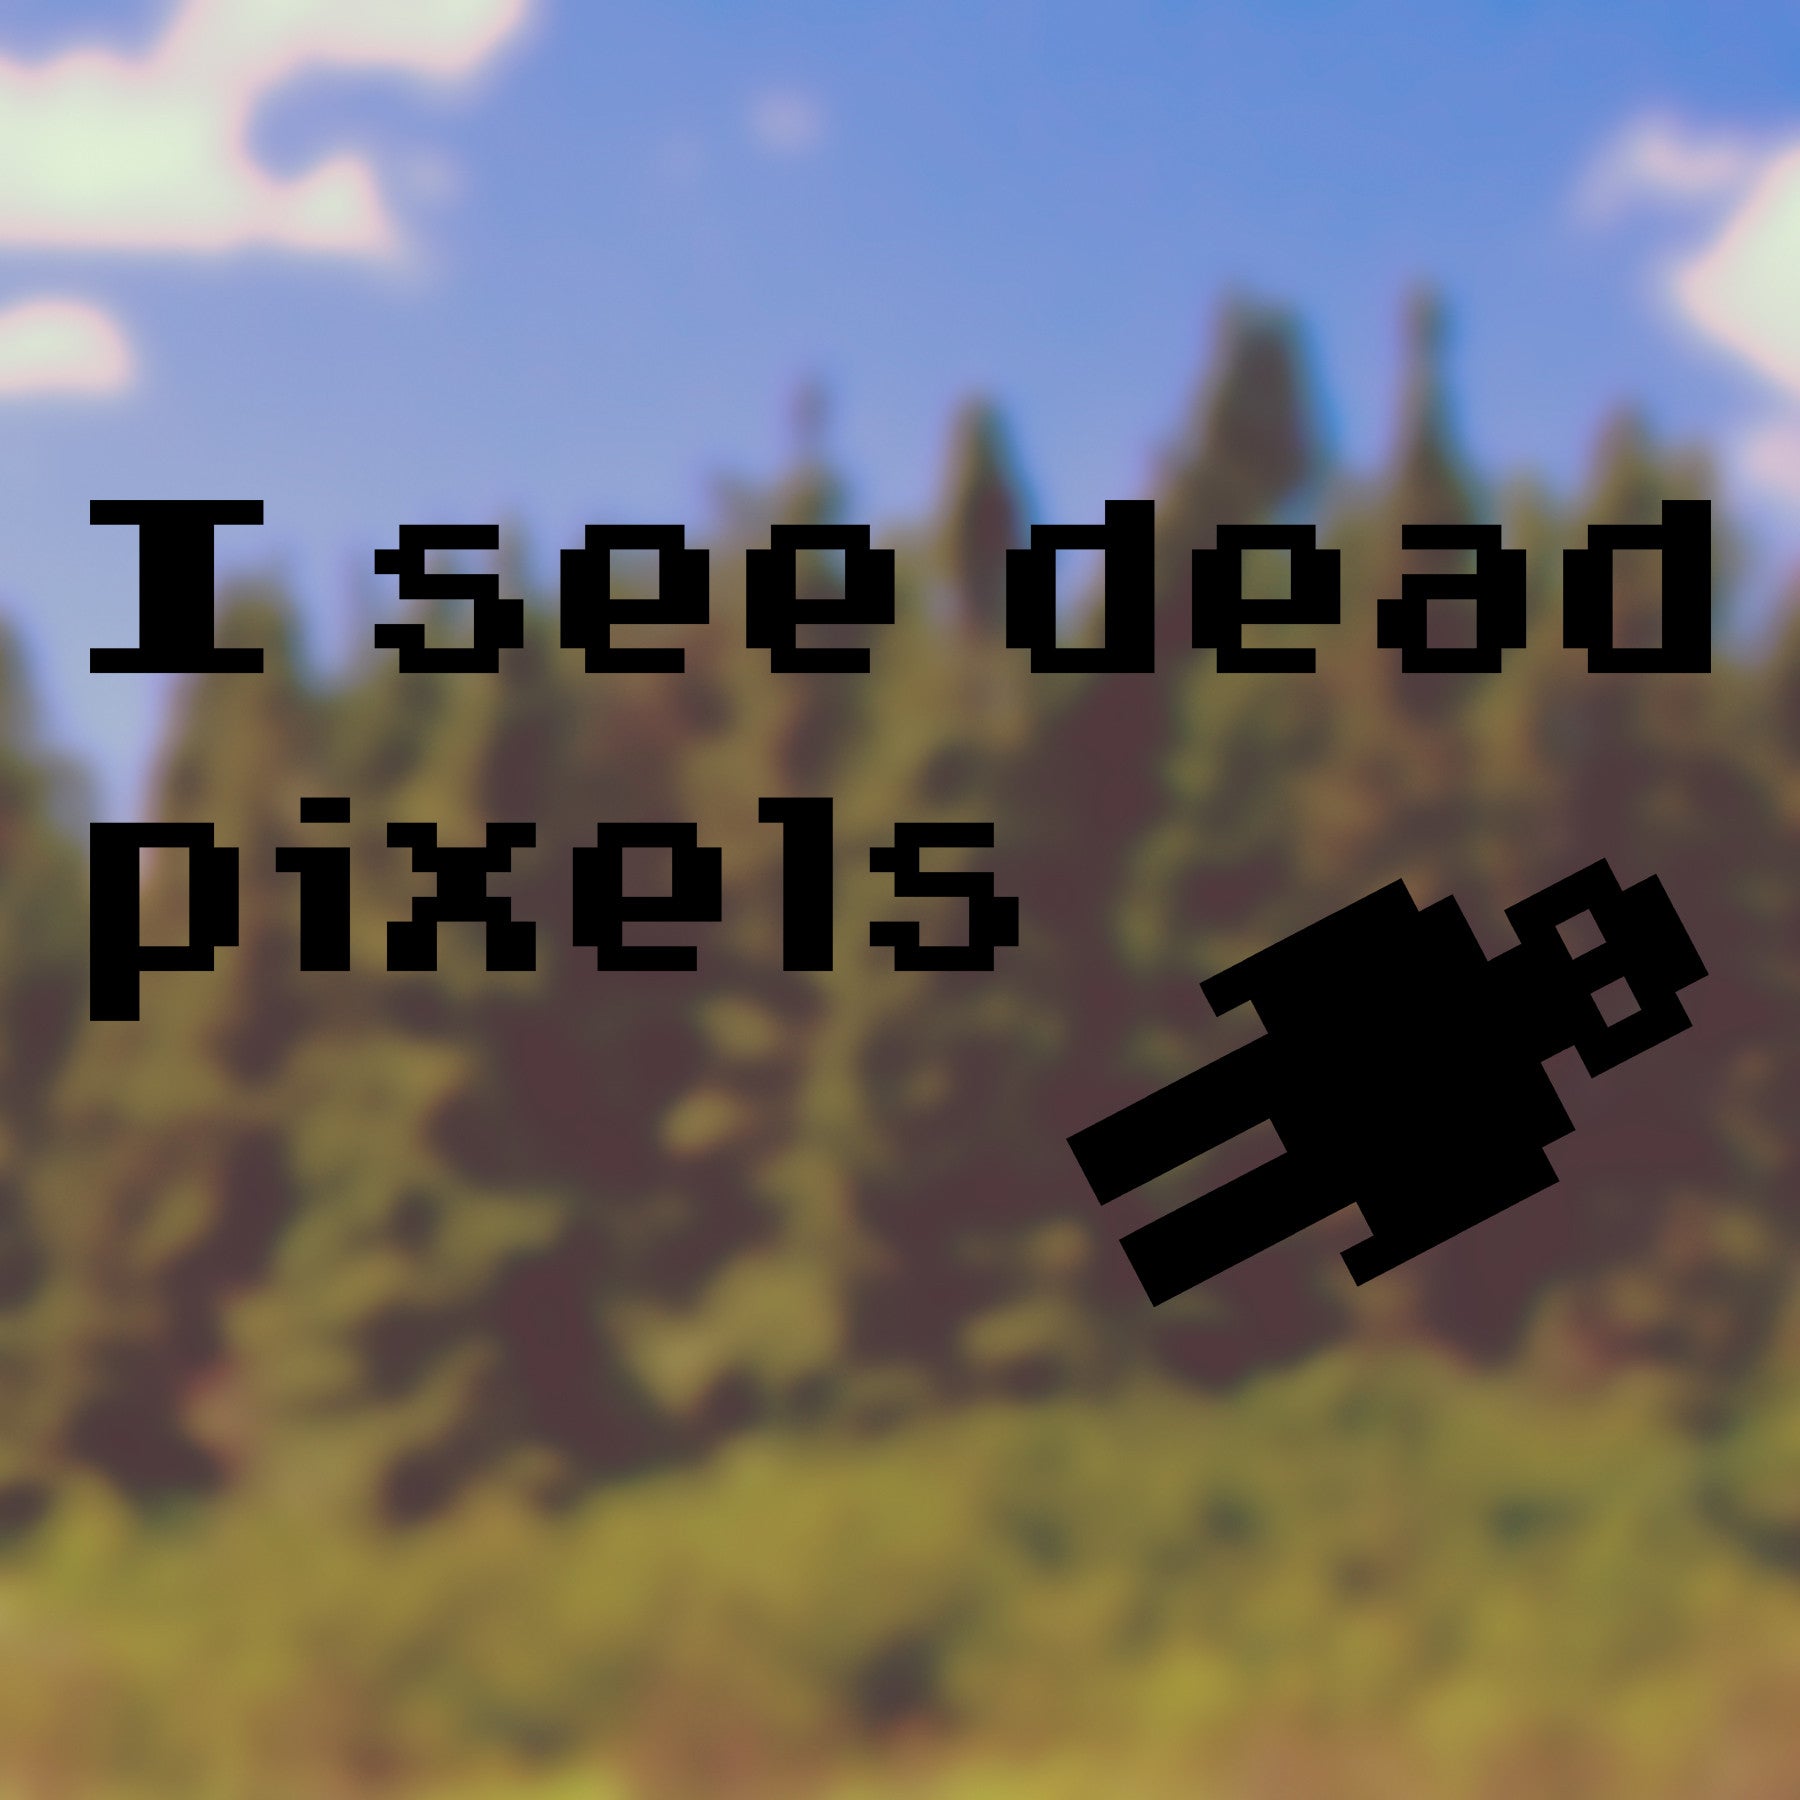 I see dead pixels | Bumper sticker - Adnil Creations